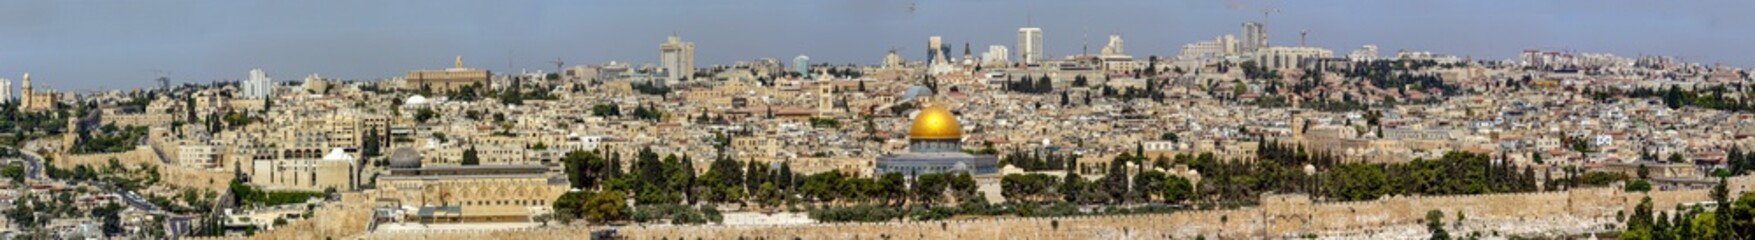 Views of the city of Jerusalem